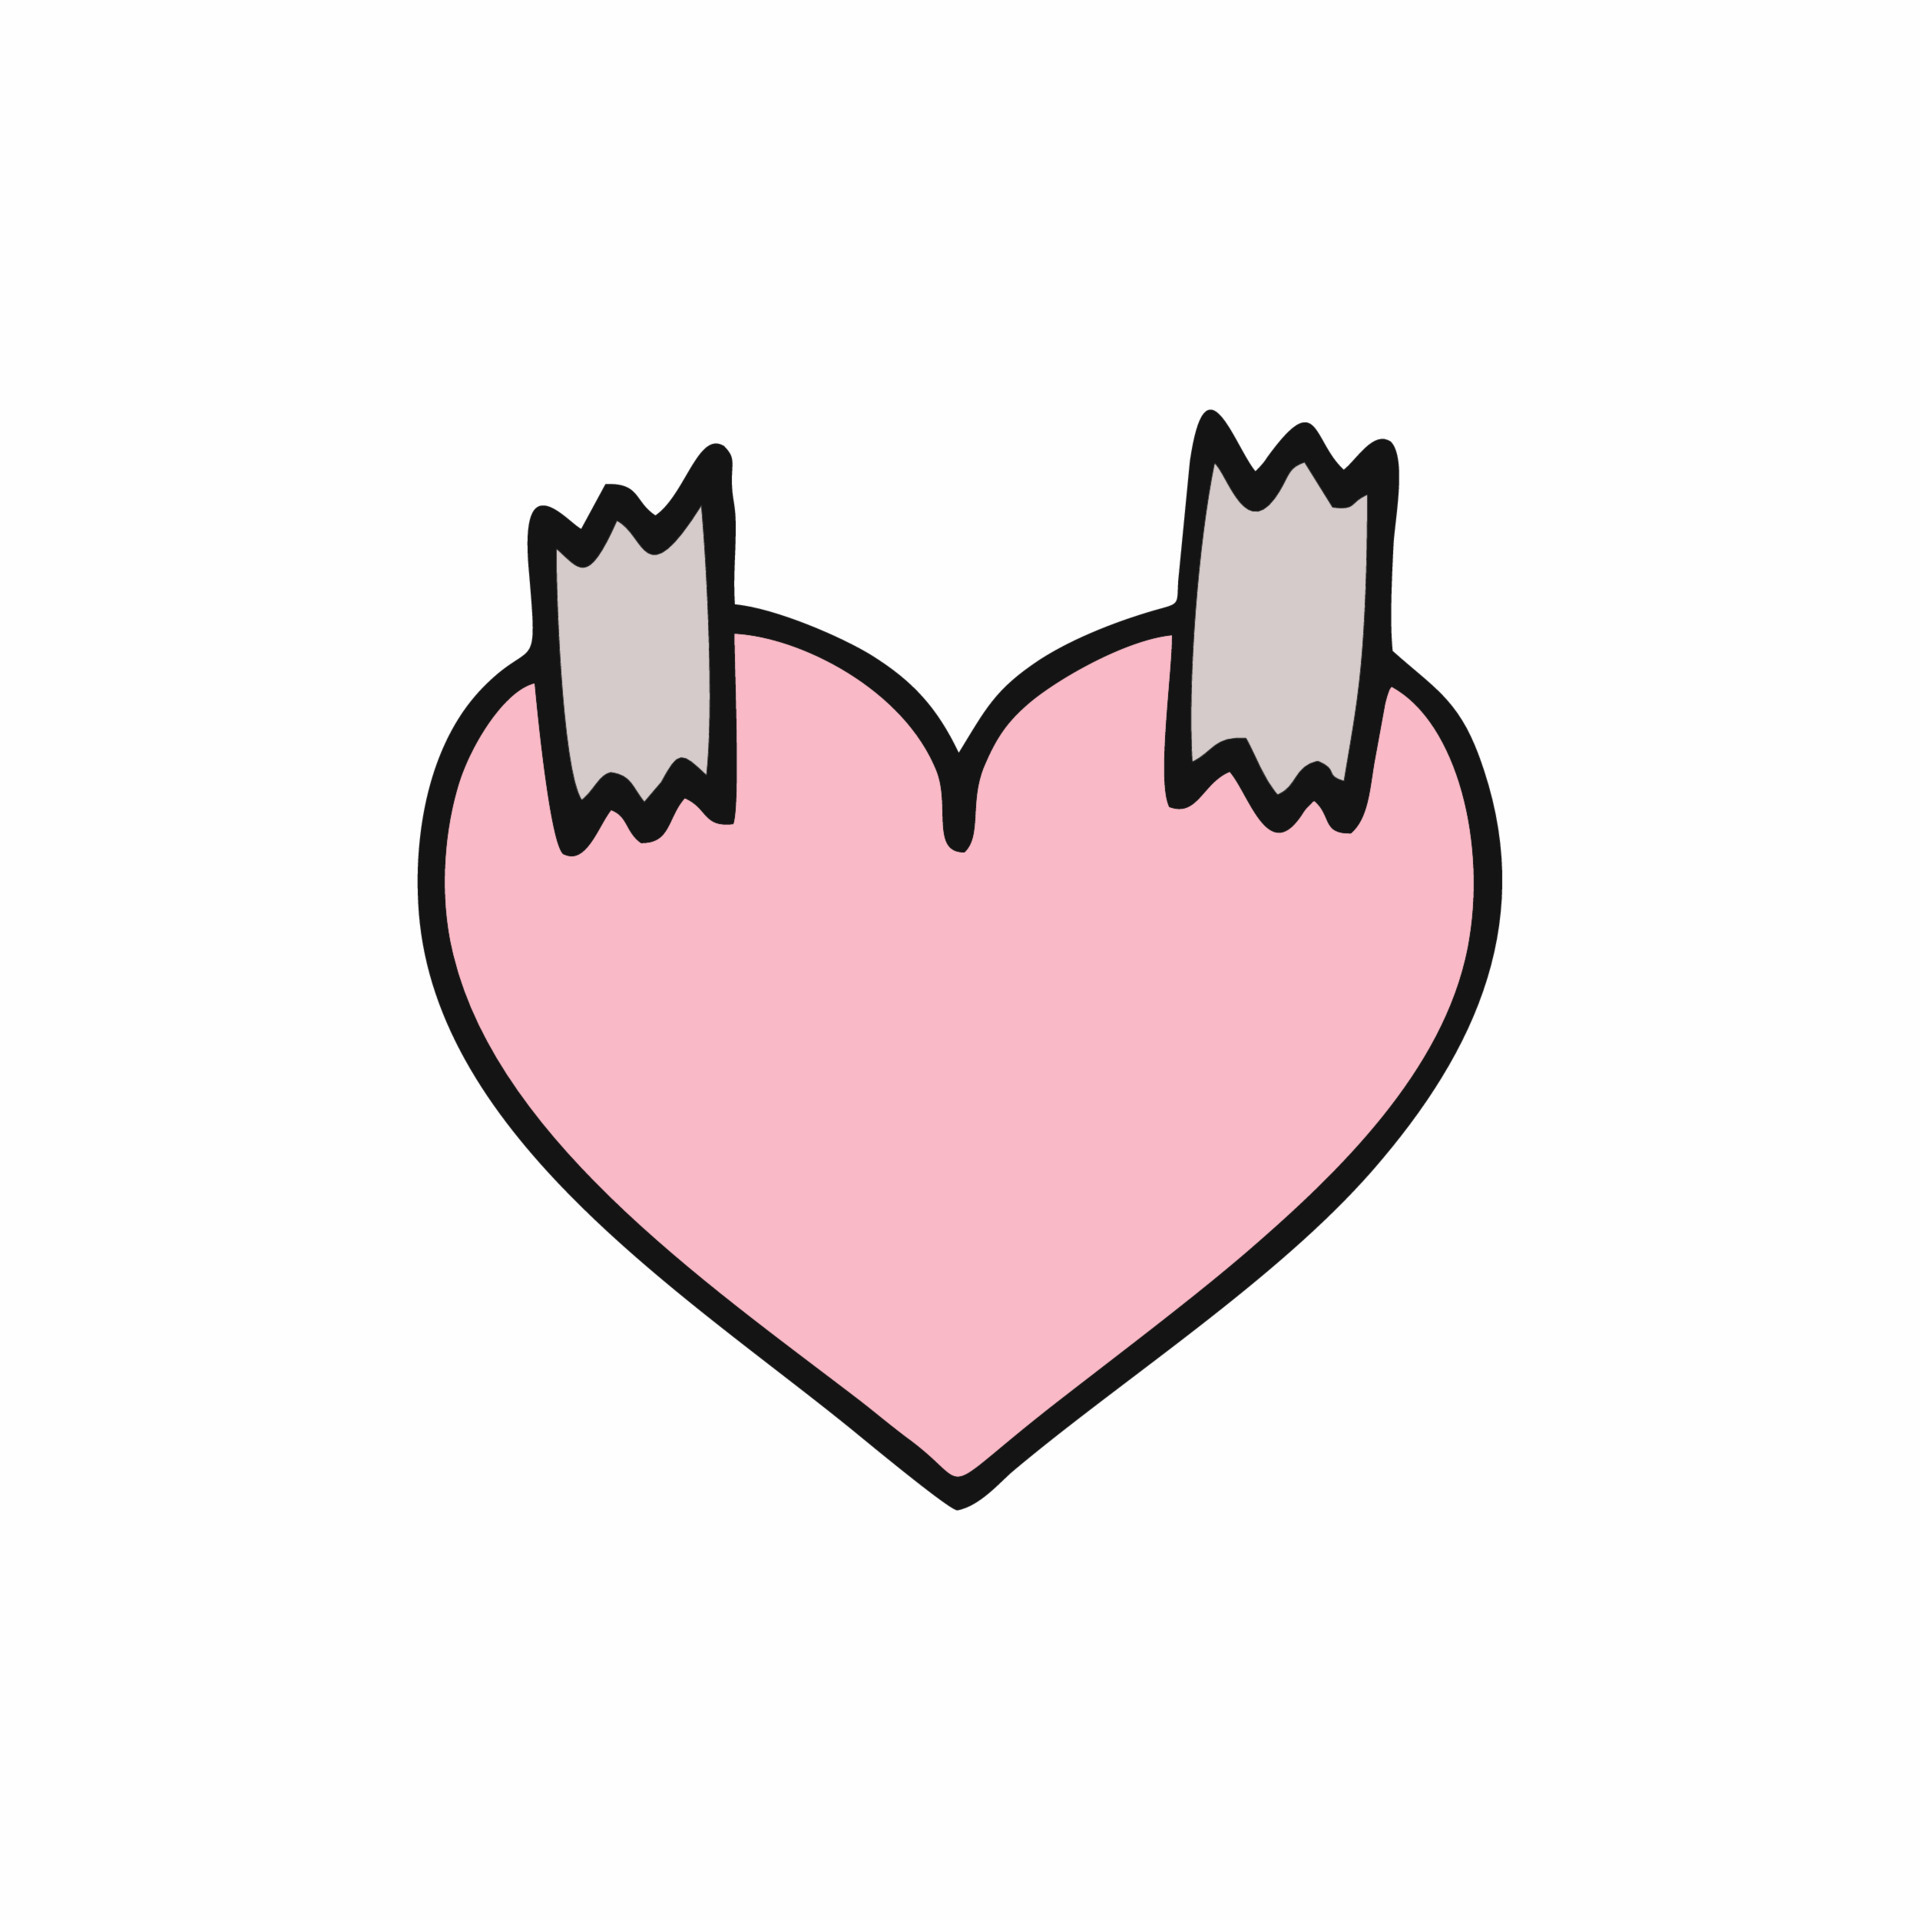 https://static.vecteezy.com/ti/vettori-gratis/p3/4731792-un-post-it-in-forma-di-un-cuore-illustrazione-per-san-valentino-in-stile-doodle-vettoriale.jpg